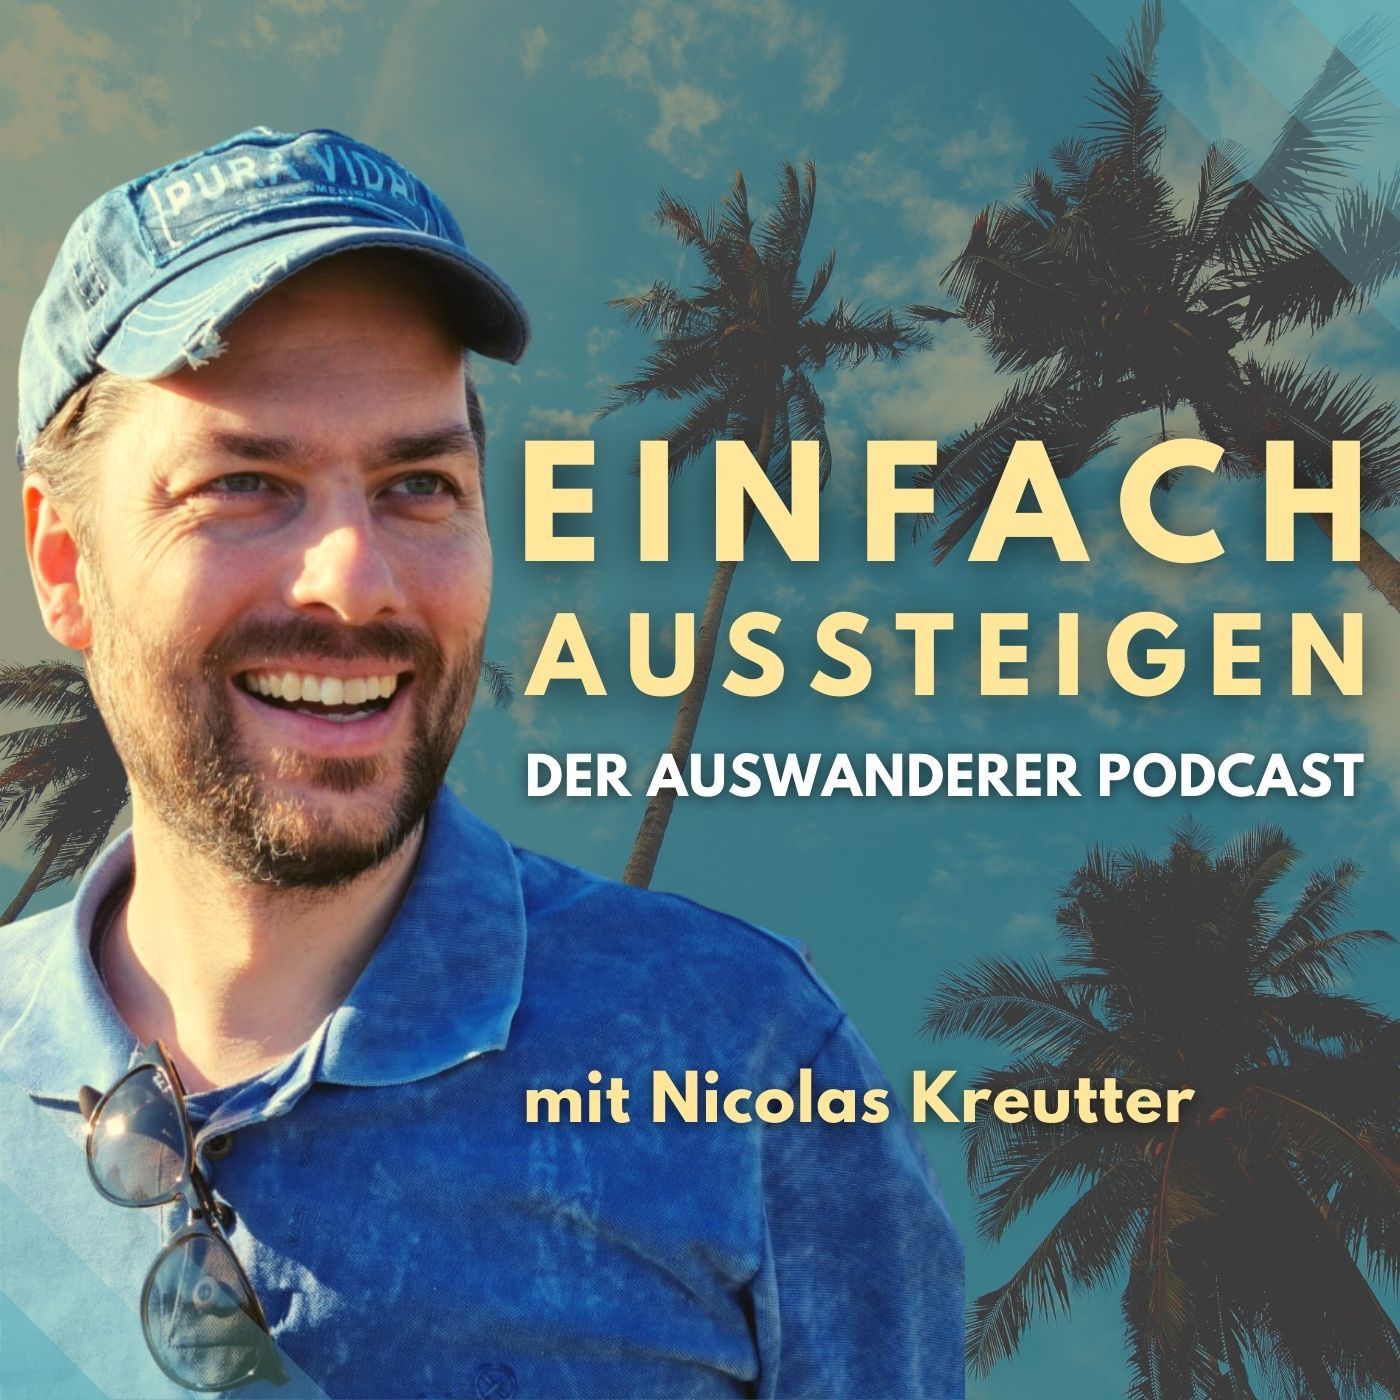 AUSSTEIGEN Podcast Der | Auswanderer – EINFACH RTL+